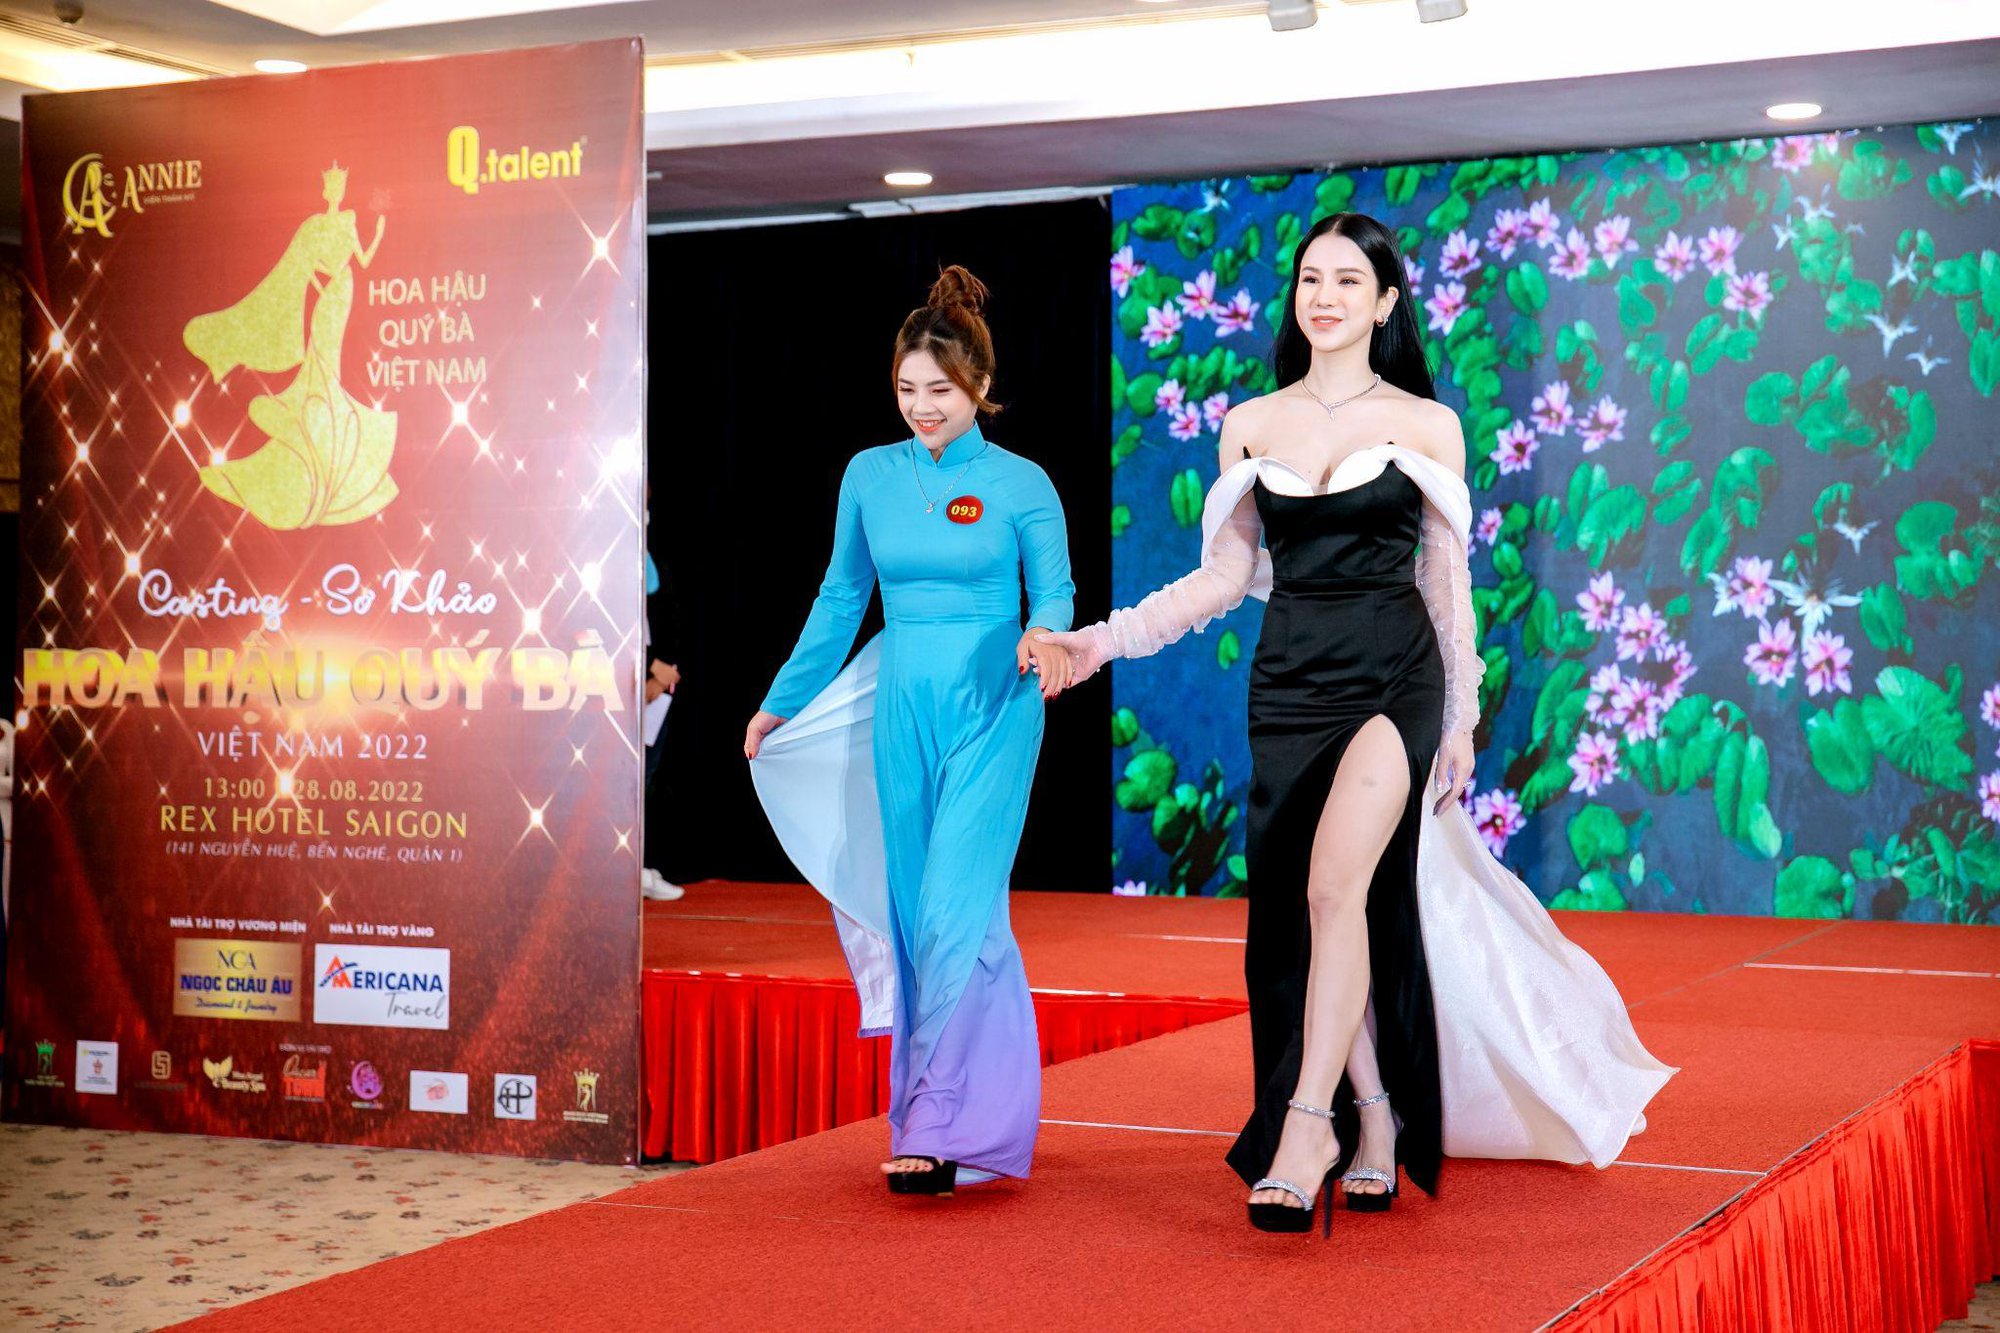 Hé lộ dàn sao “khủng” hội tụ trong đêm chung kết Hoa hậu Quý bà Việt Nam 2022 - Ảnh 2.